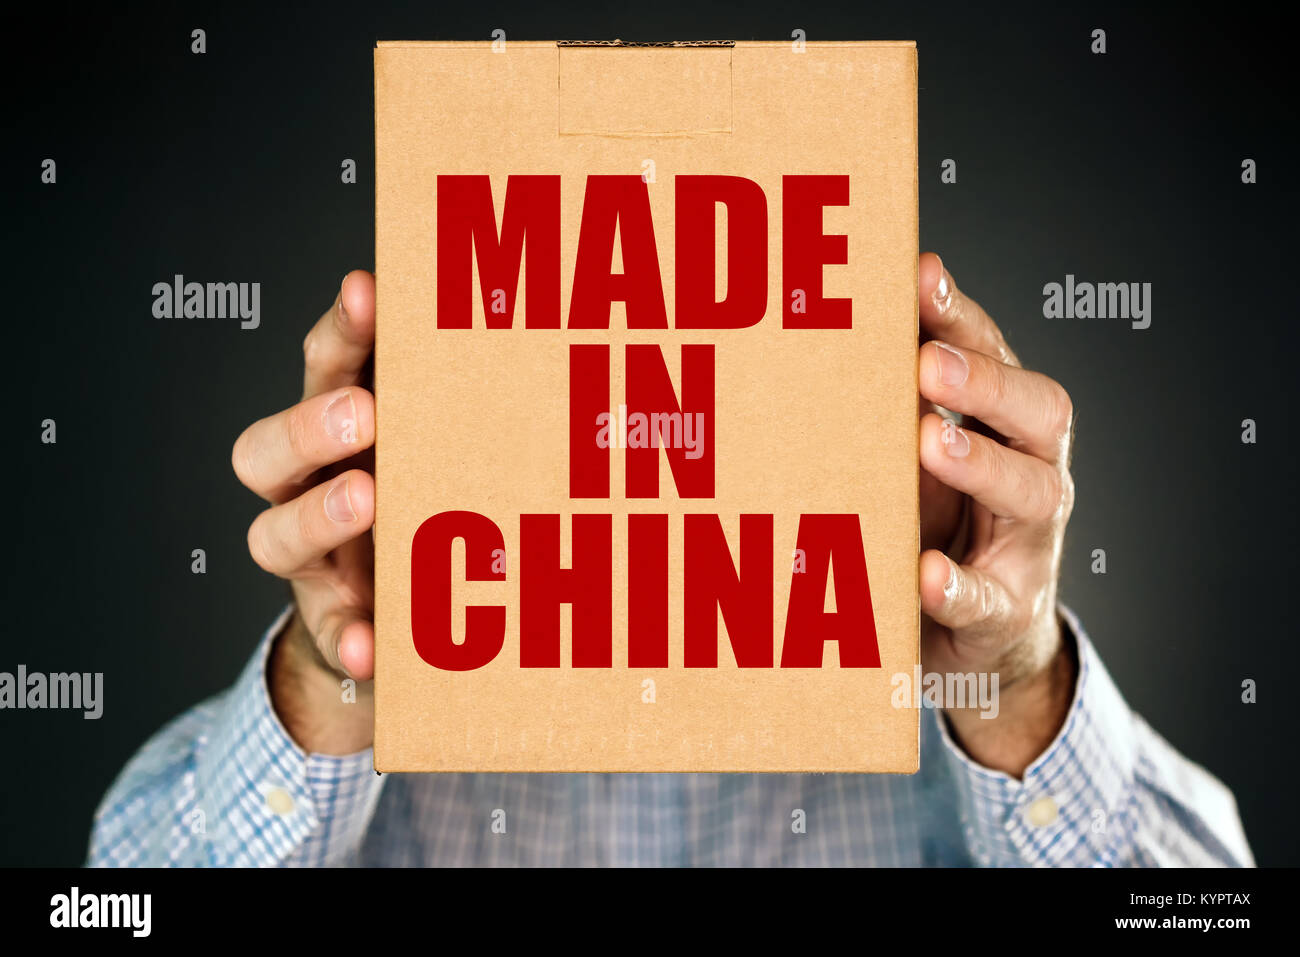 Uomo con scatola di cartone confezione del prodotto con Made in China etichetta imprint per merci merci importate dall'Asia orientale Foto Stock